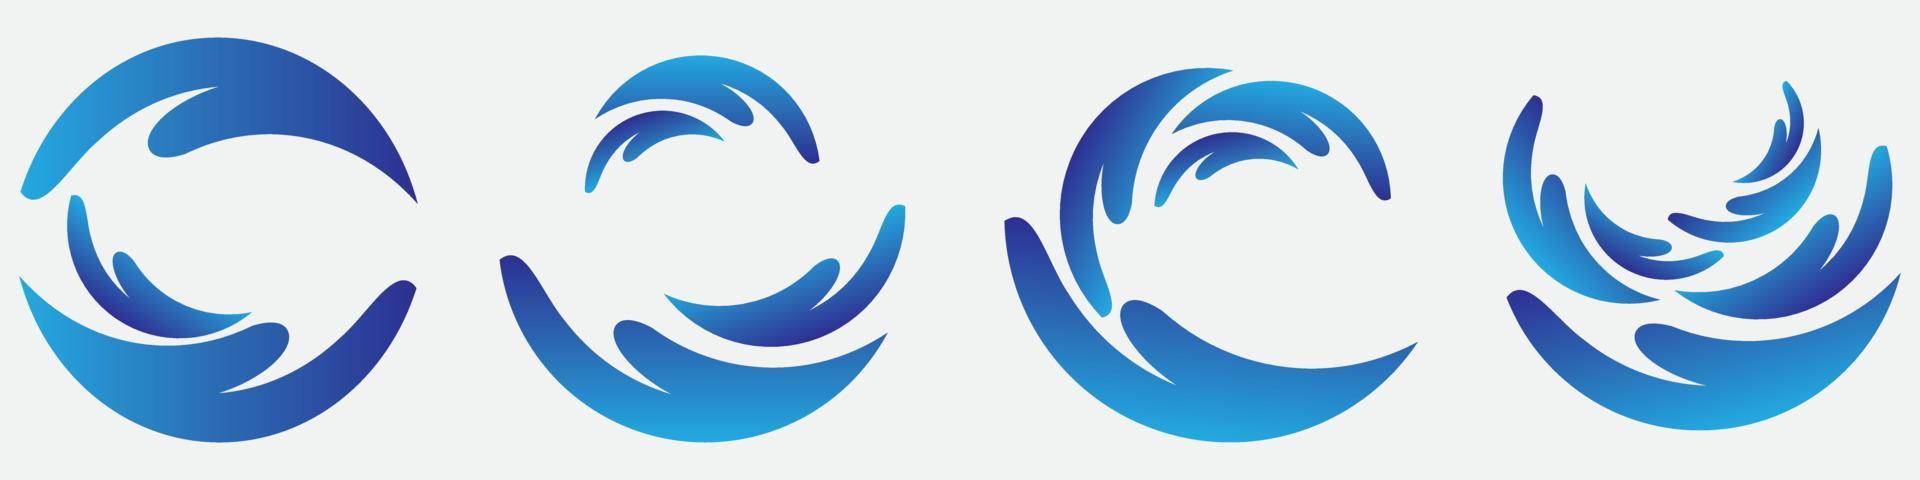 Set Blue wave logo vector. water wave illustration template design vector